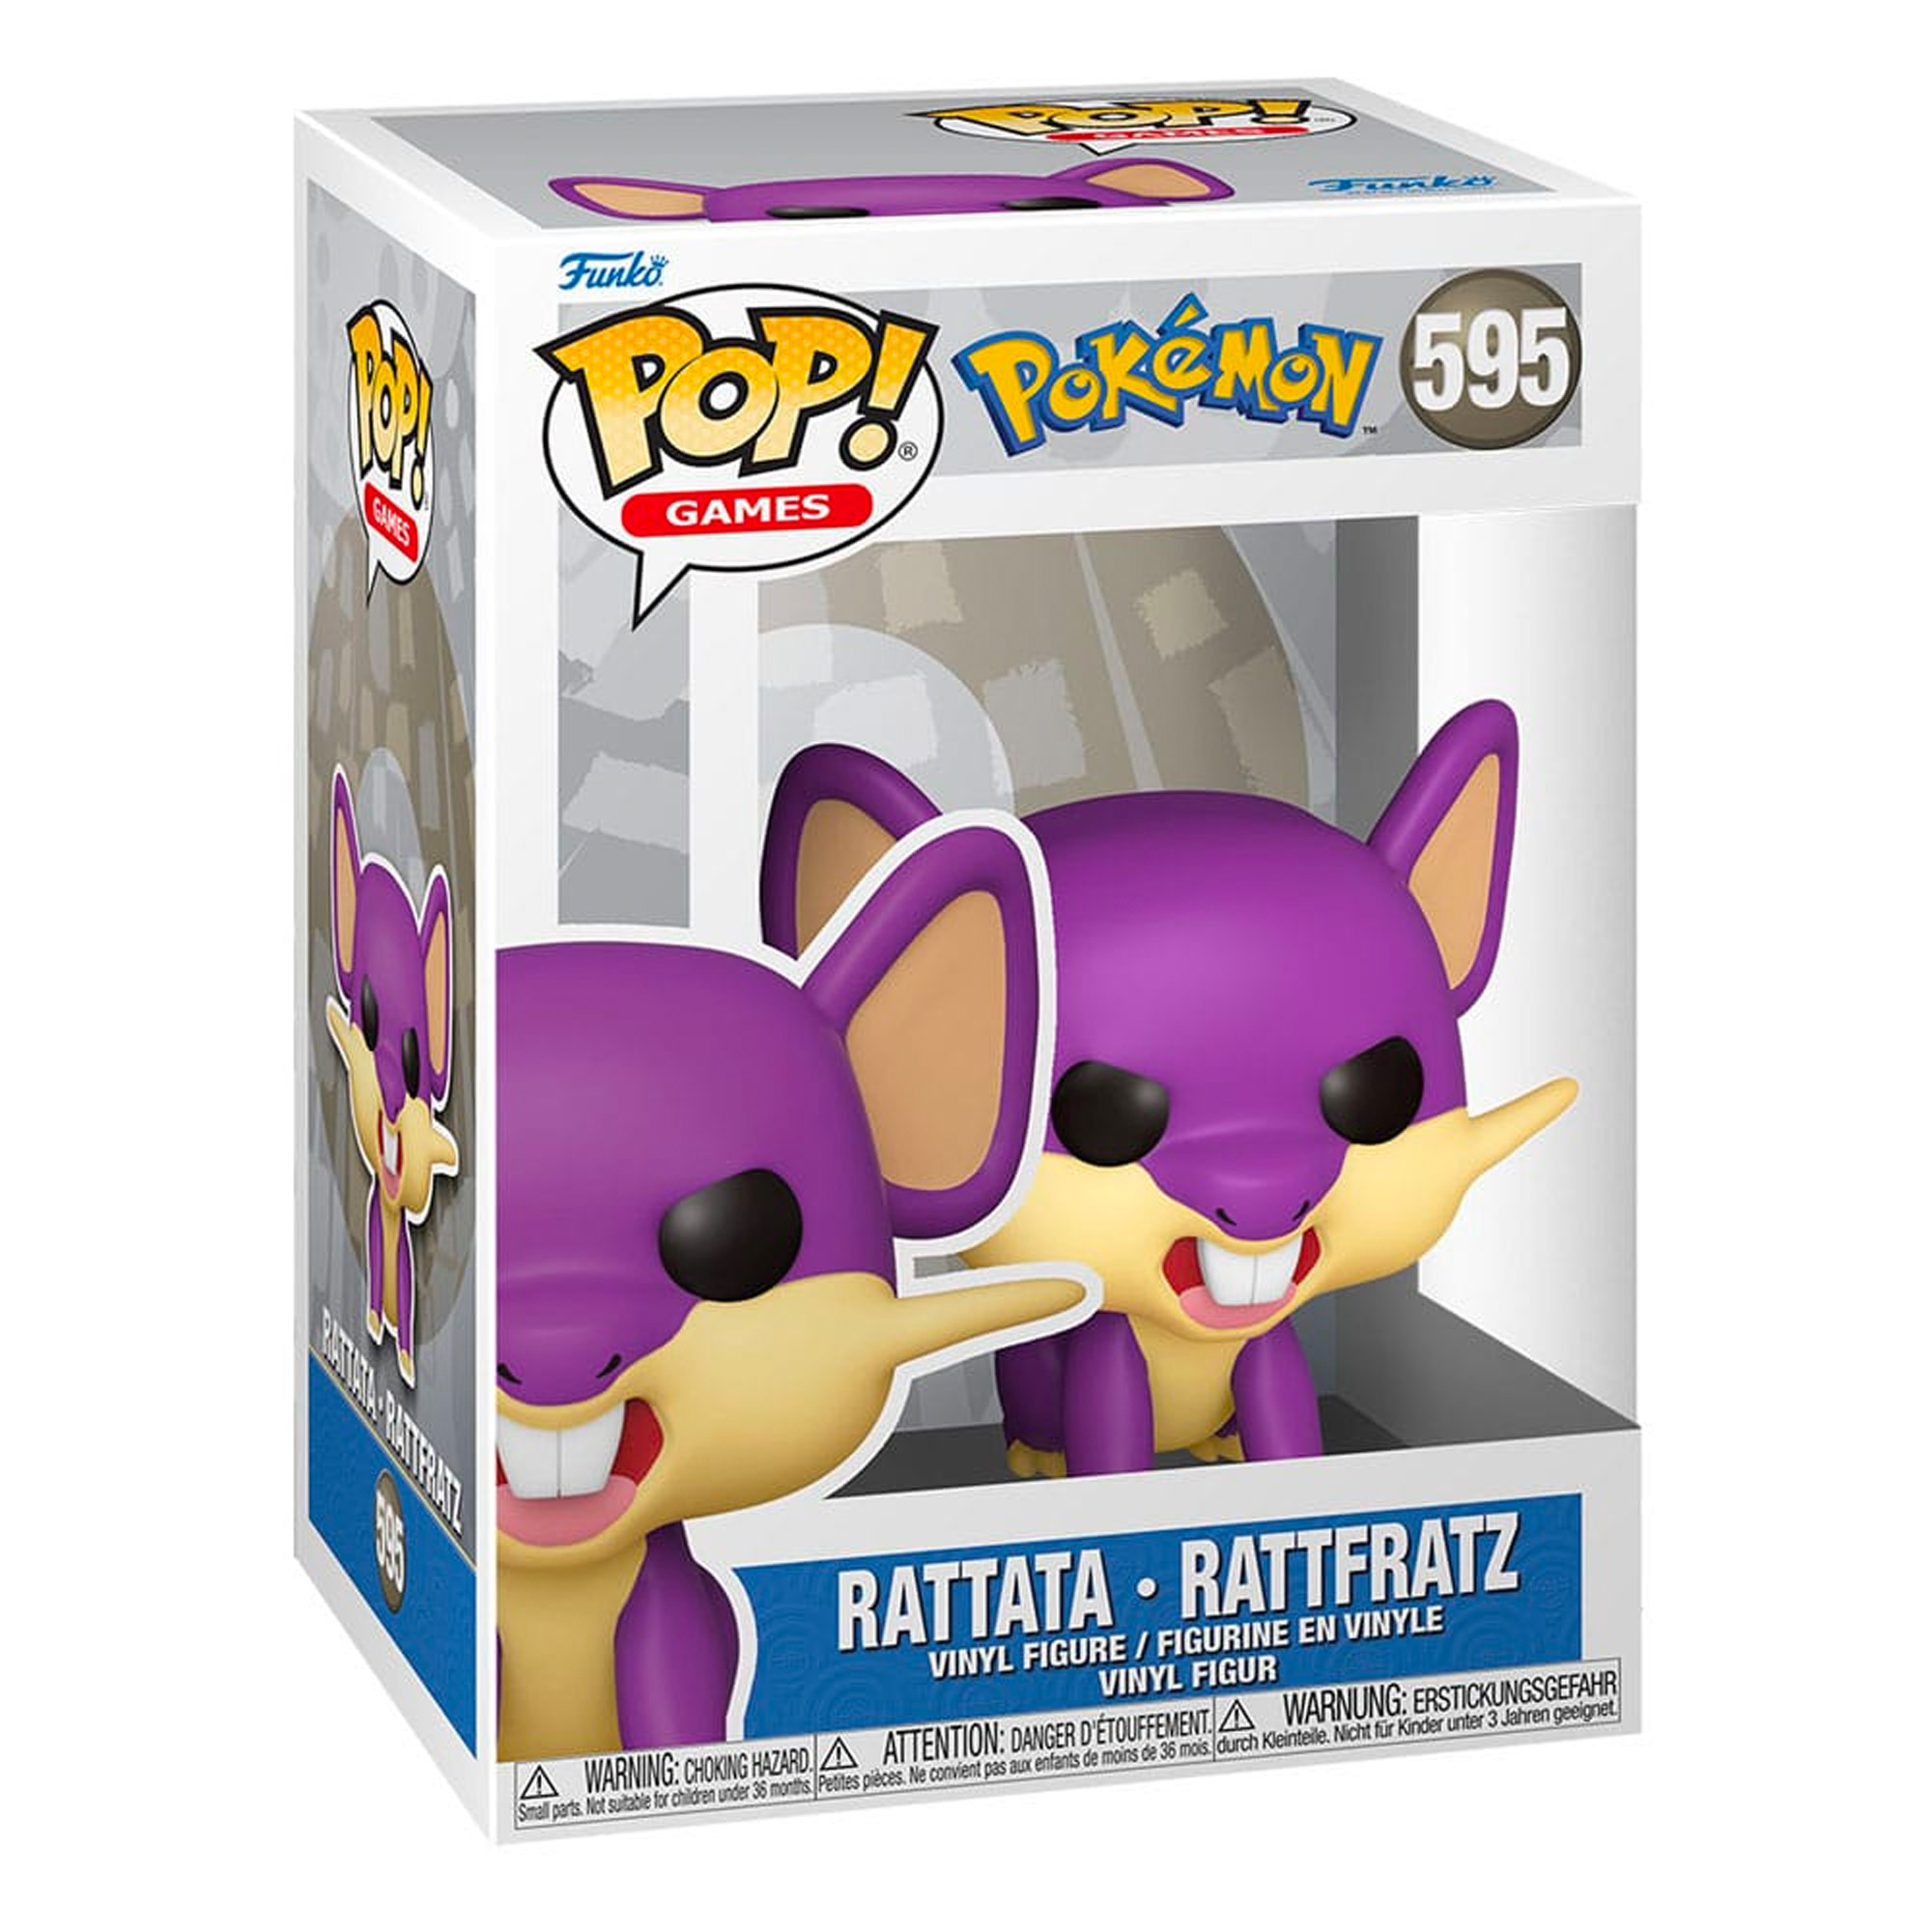 Funko POP! Rattfratz - Pokémon